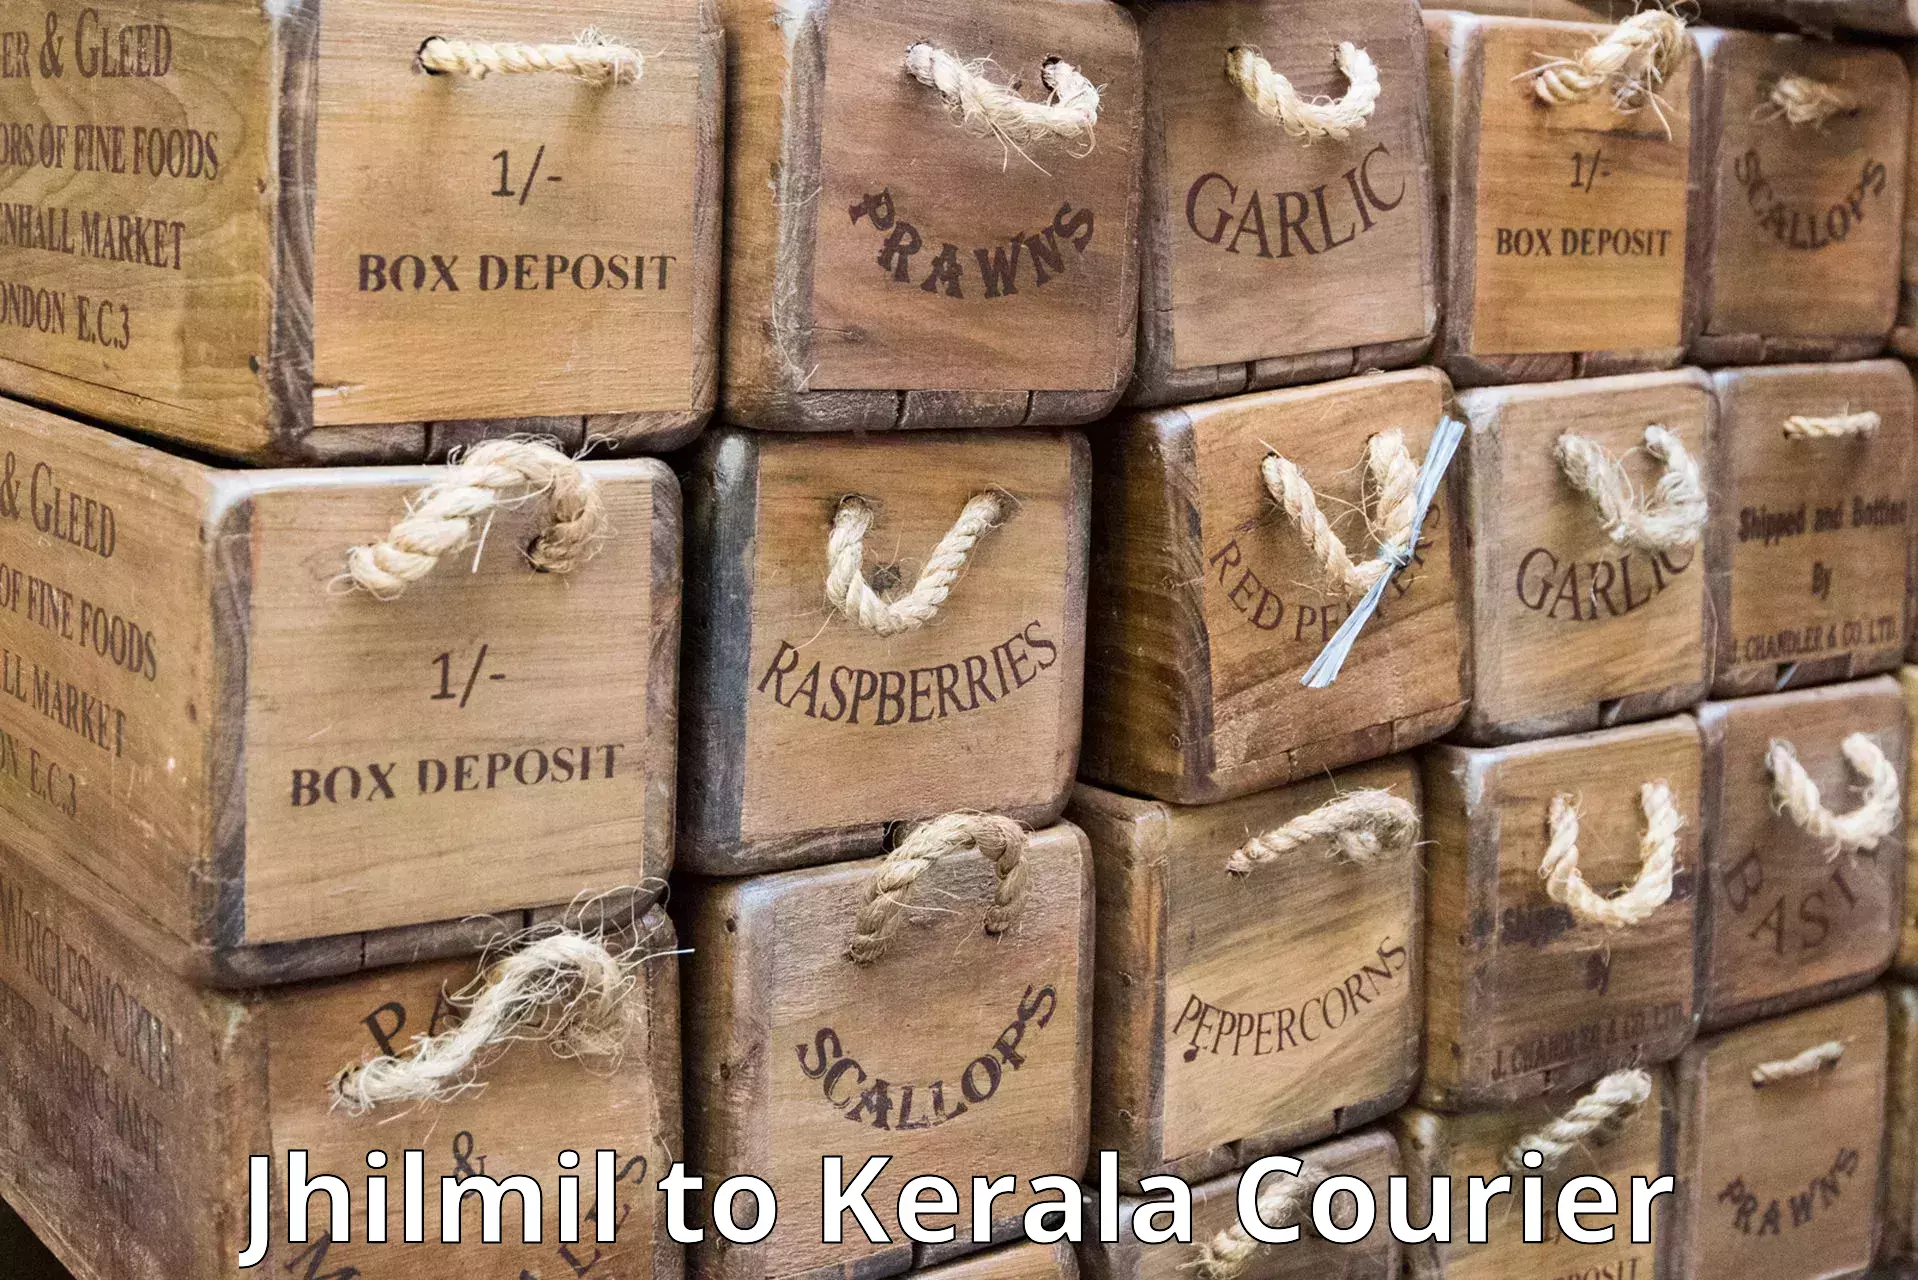 Professional parcel services Jhilmil to Kuthiathode